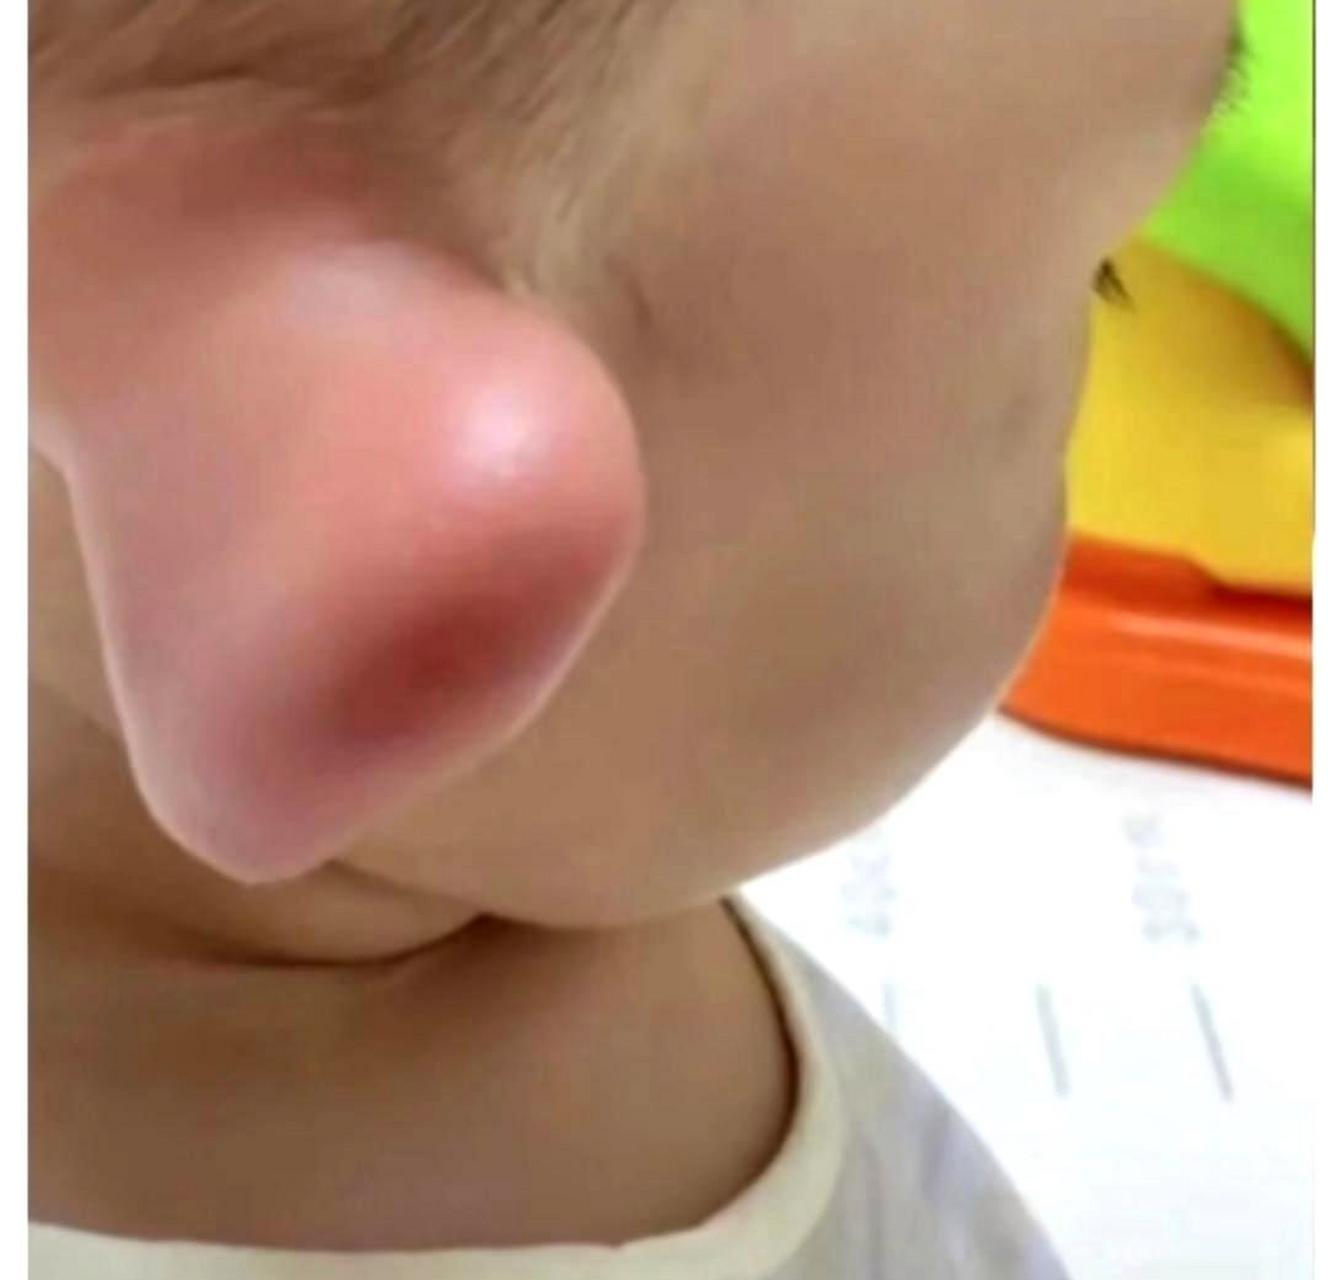 我不知道是哪只蜜蜂咬了我儿子的耳朵,结果他的耳朵肿得像个大耳朵怪